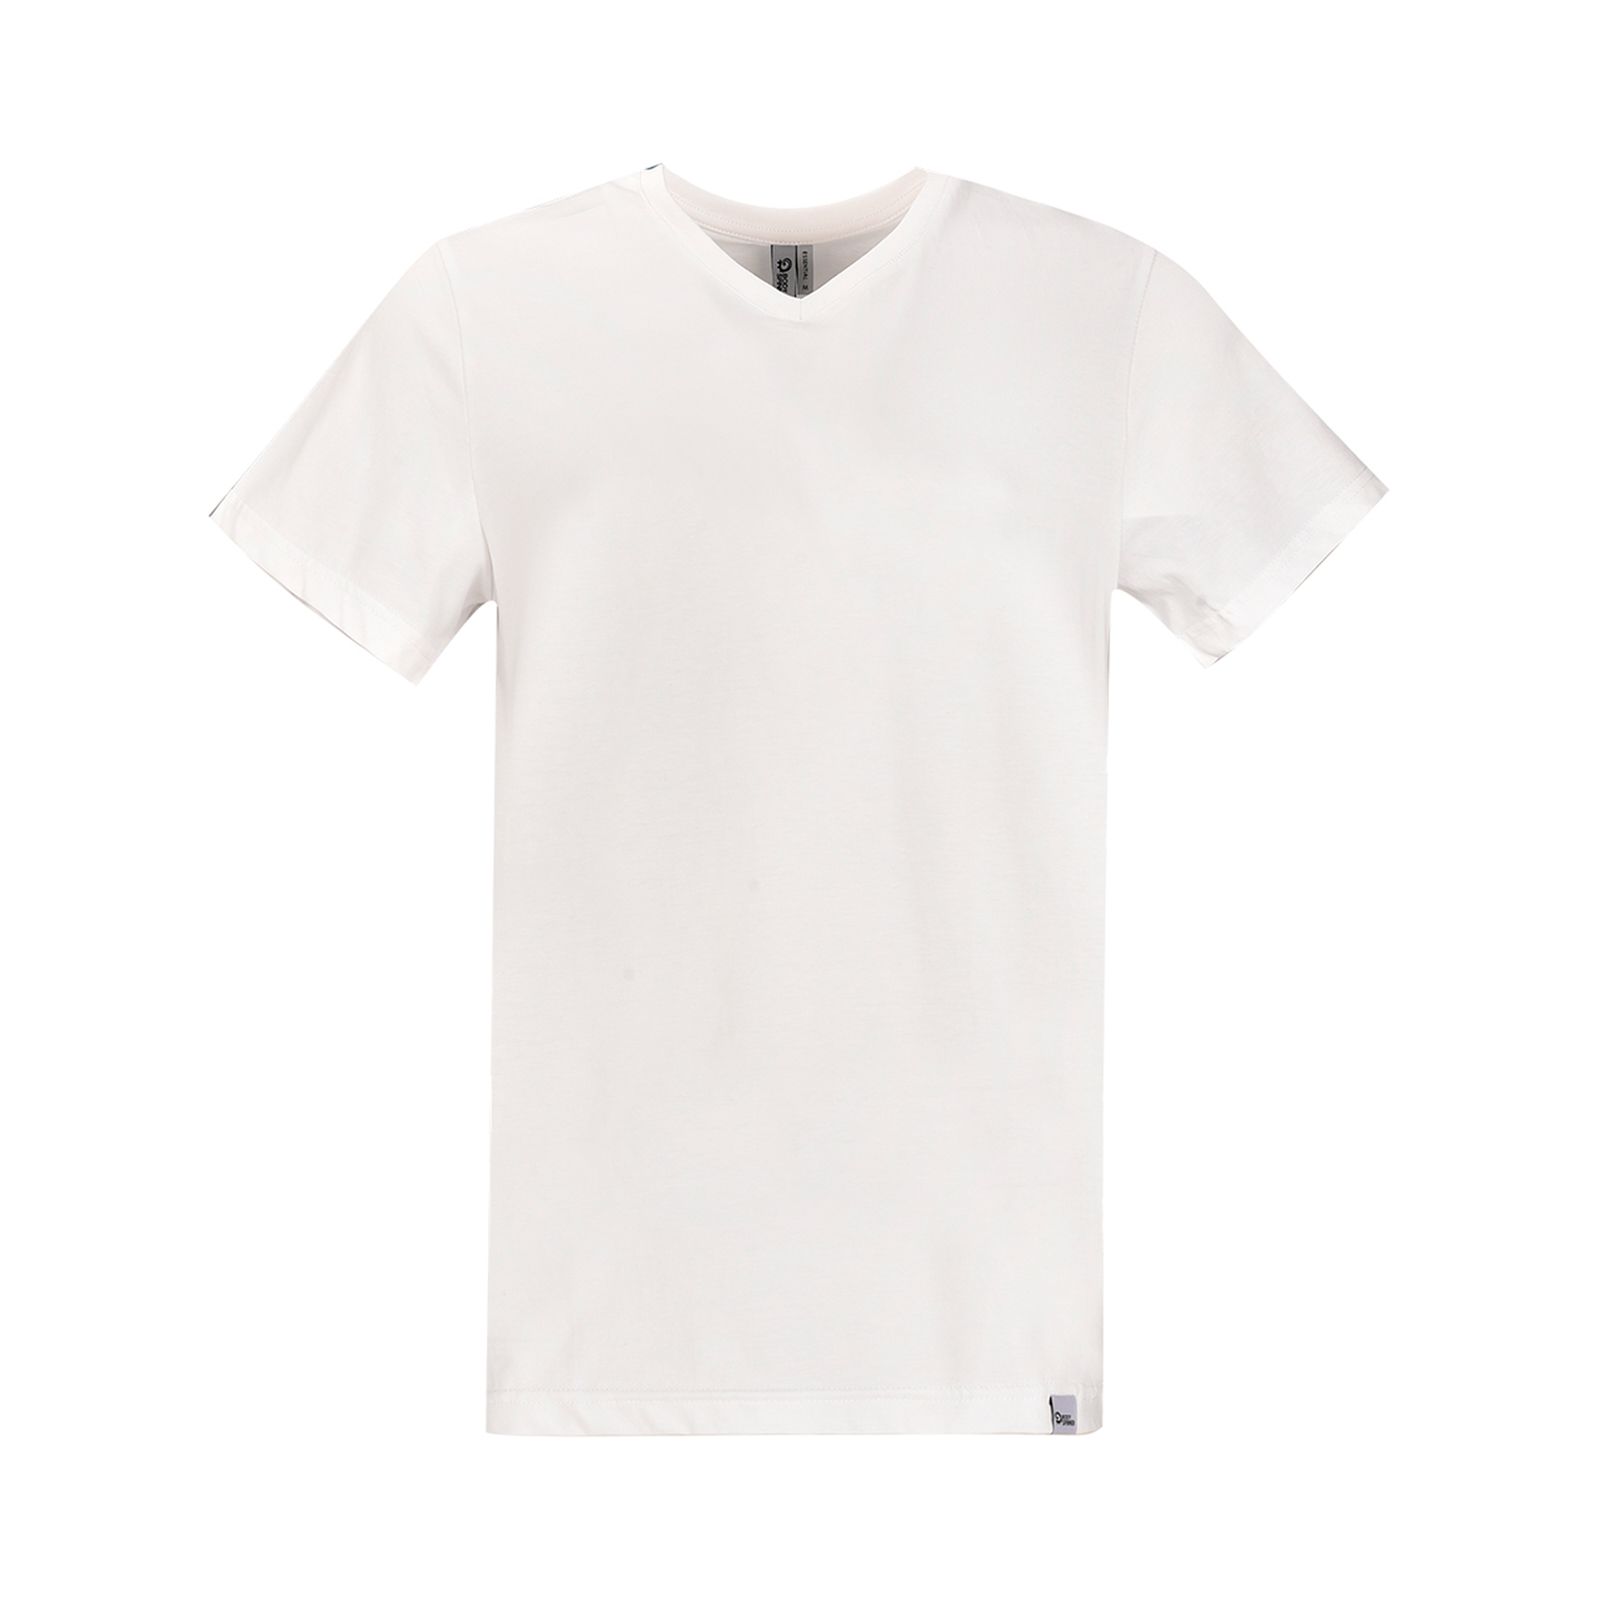 تی شرت آستین کوتاه مردانه بادی اسپینر مدل 5057 کد 1 رنگ سفید